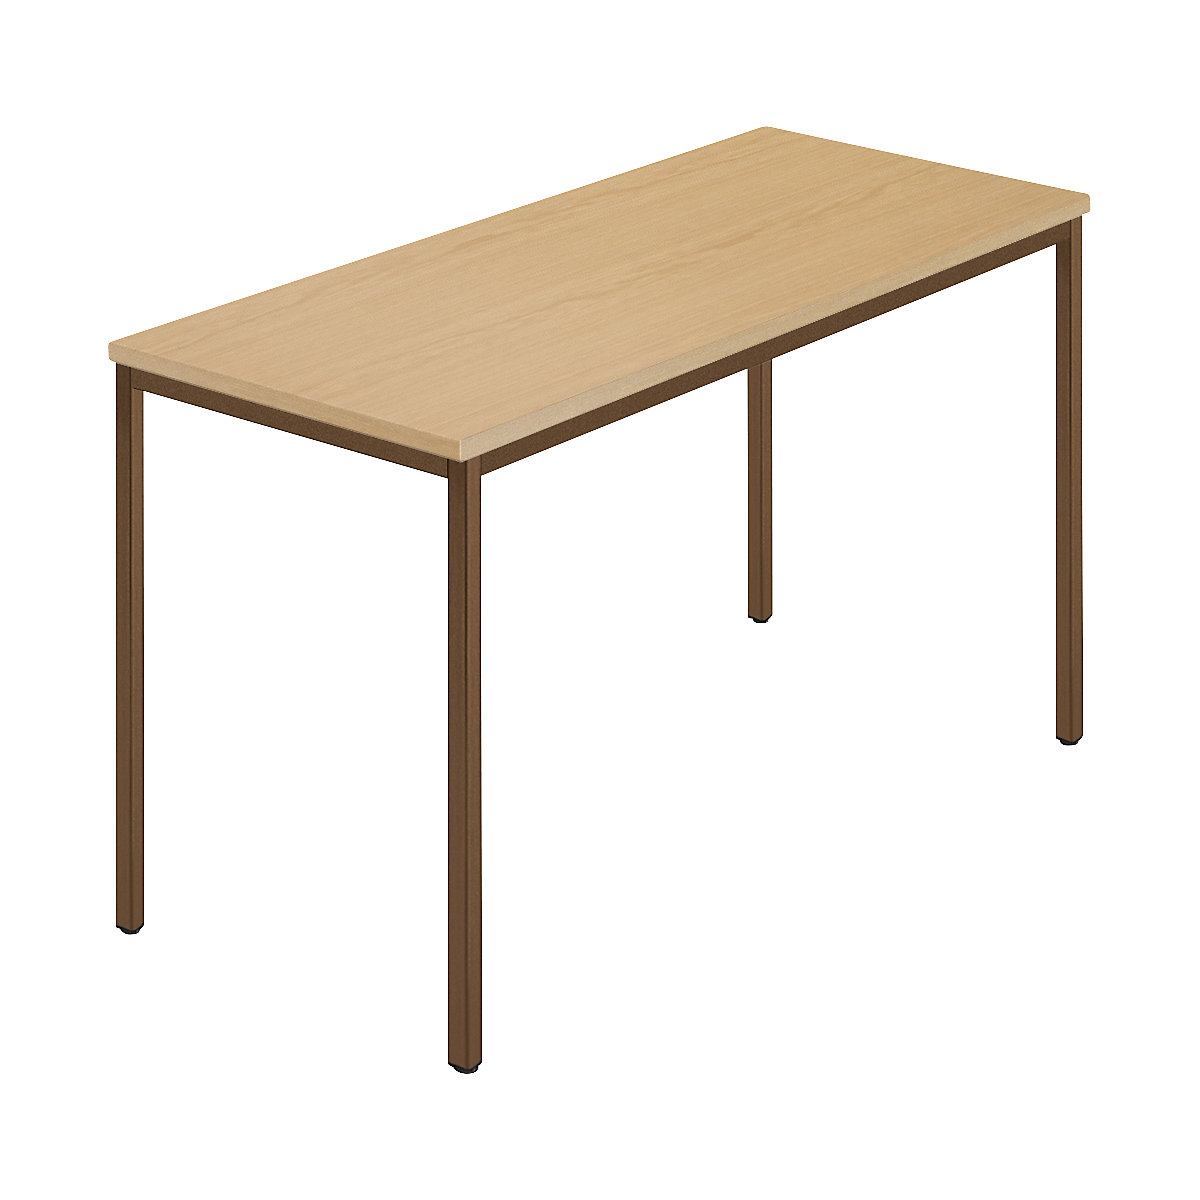 Rechthoekige tafel, vierkante buis met coating, b x d = 1200 x 600 mm, naturel beukenhout / bruin-6